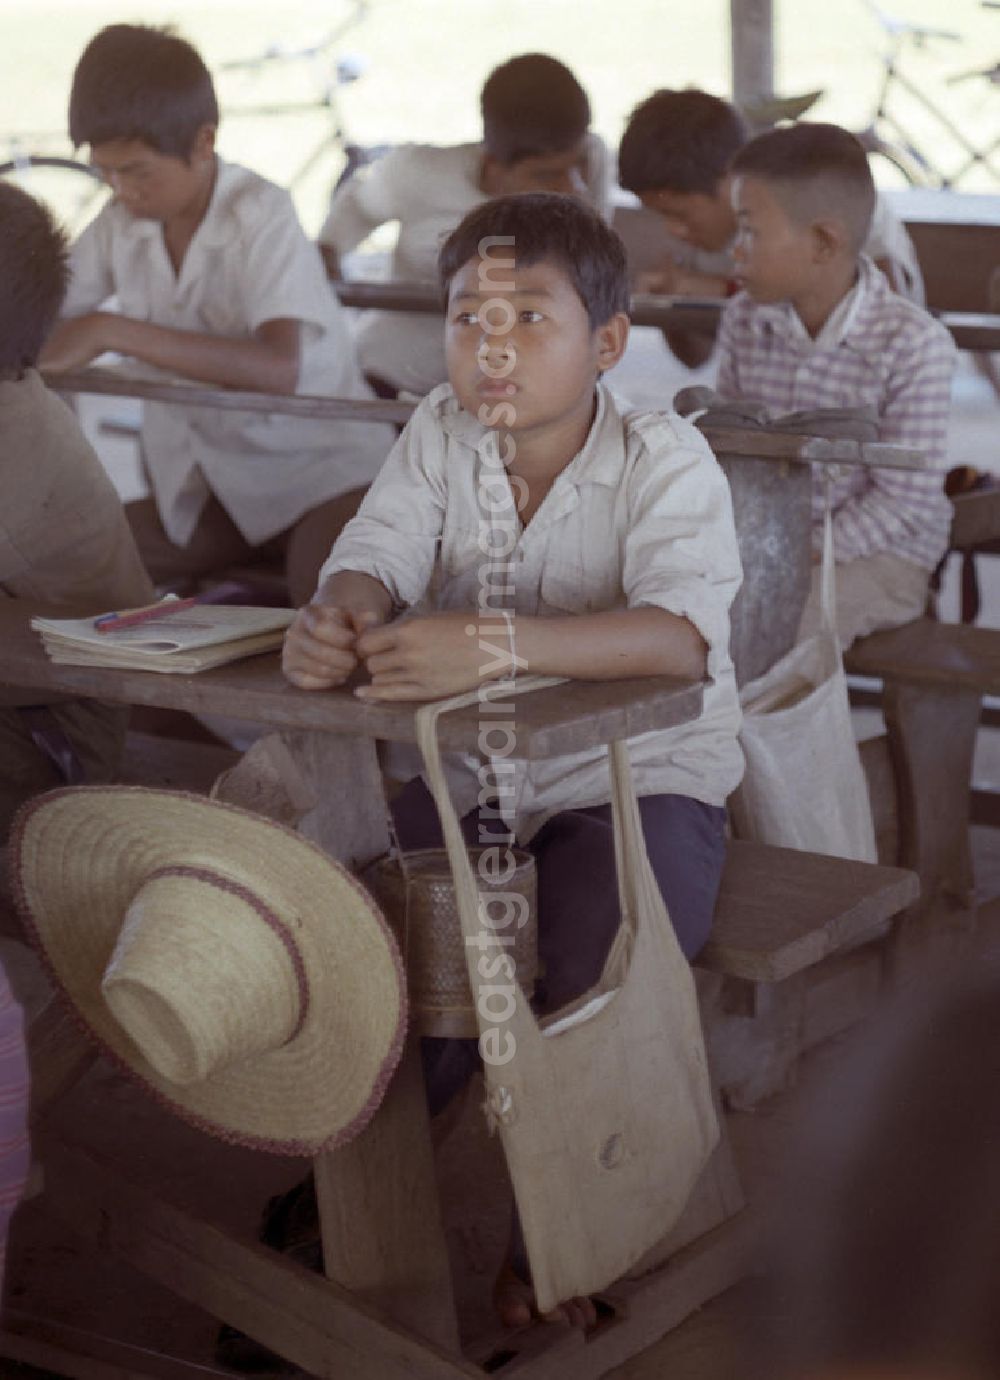 GDR image archive: Vientiane - Nach der Gründung der Volksrepublik Laos im Dezember 1975 wurde das Schulsystem von der neuen kommunistischen Regierung in Laos wieder aufgebaut, um dem in der Bevölkerung weit verbreiteten Analphabetismus entgegenzuwirken.